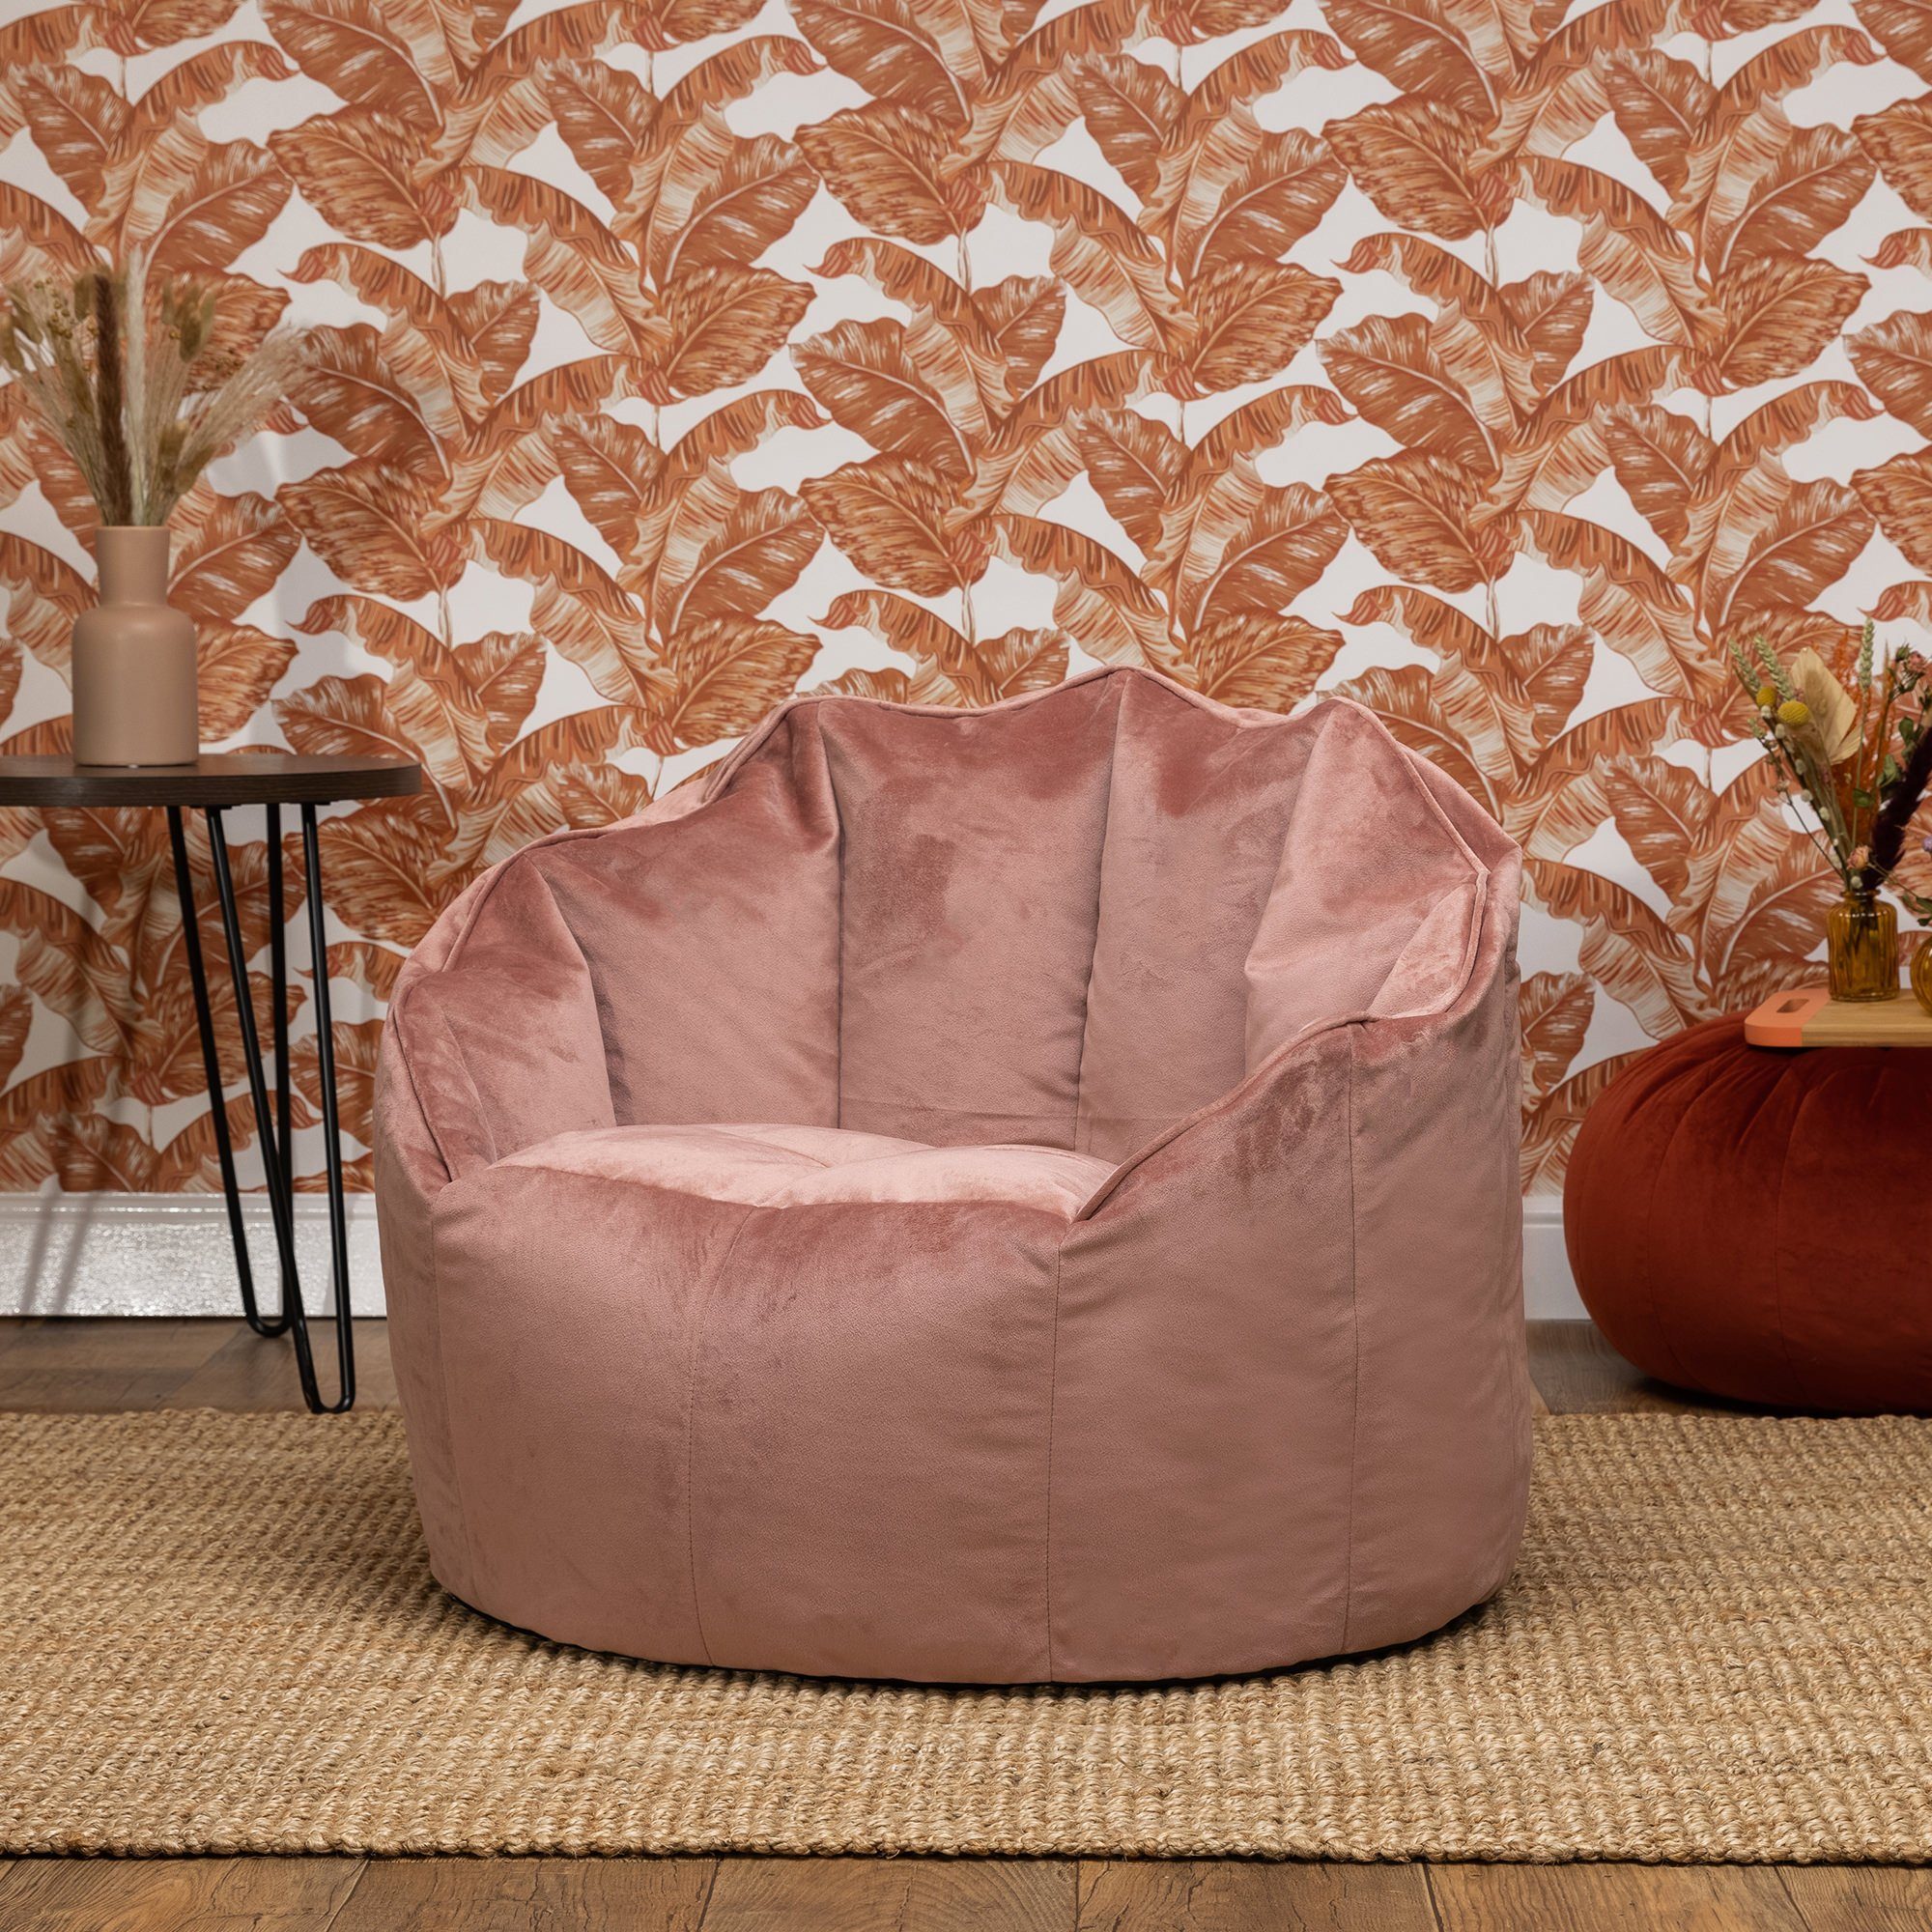 Plüschsamt Sitzsack aus Sitzsack Sessel „Sirena“ icon rosa